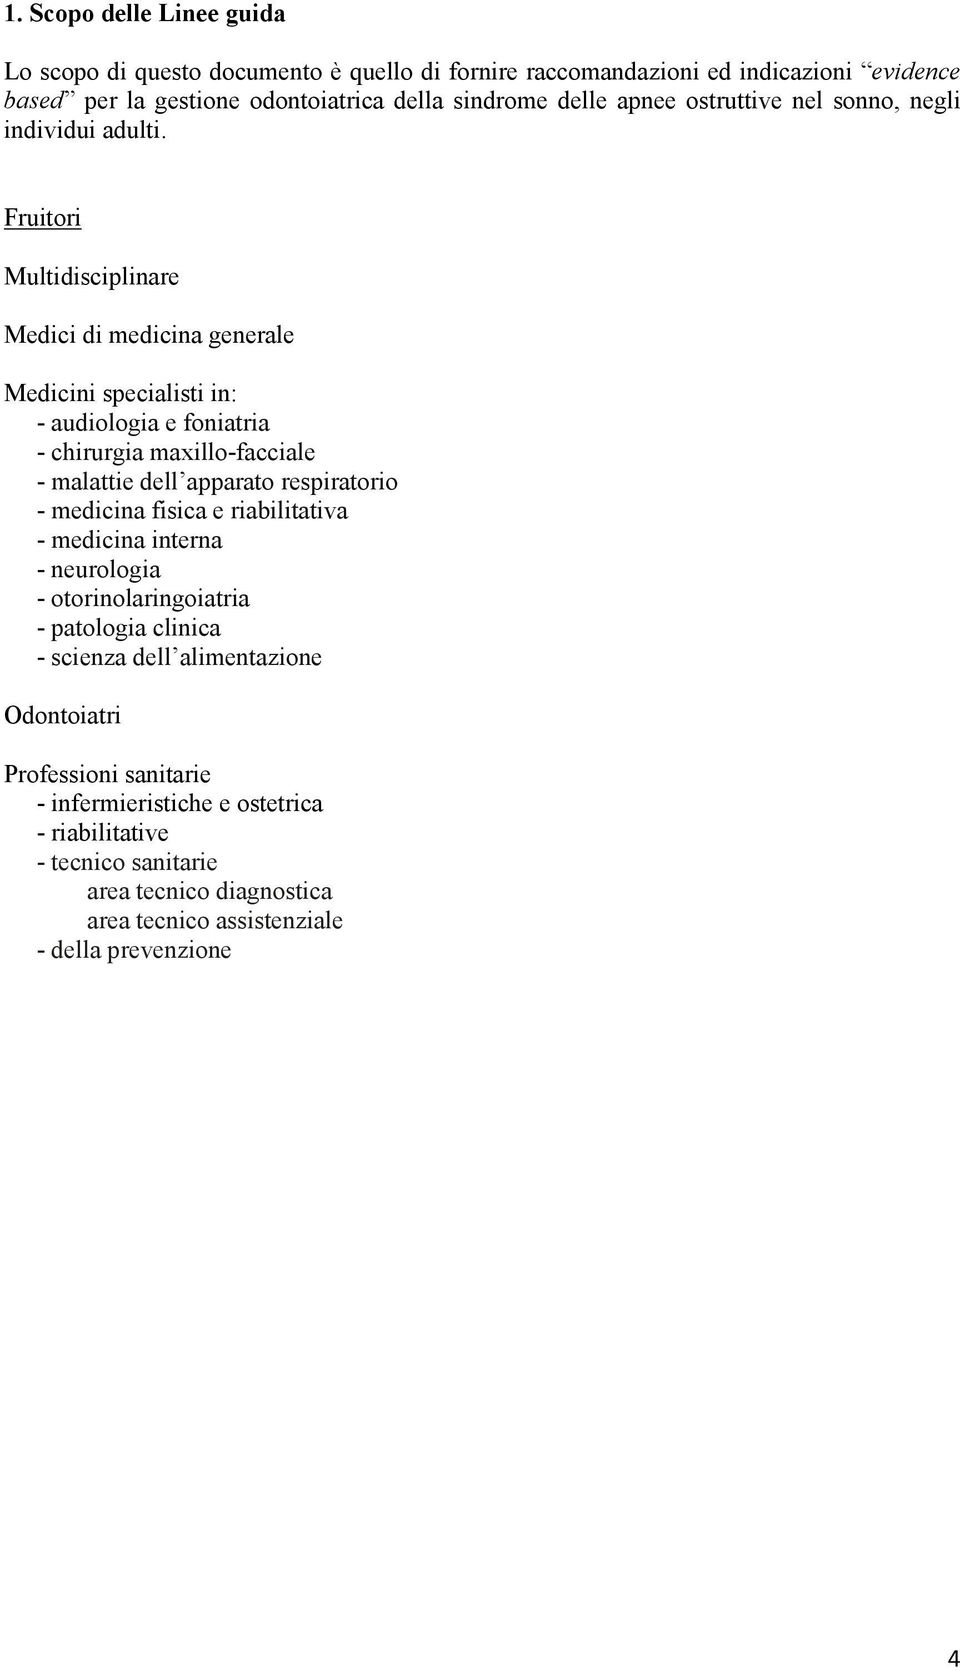 Fruitori Multidisciplinare Medici di medicina generale Medicini specialisti in: - audiologia e foniatria - chirurgia maxillo-facciale - malattie dell apparato respiratorio -